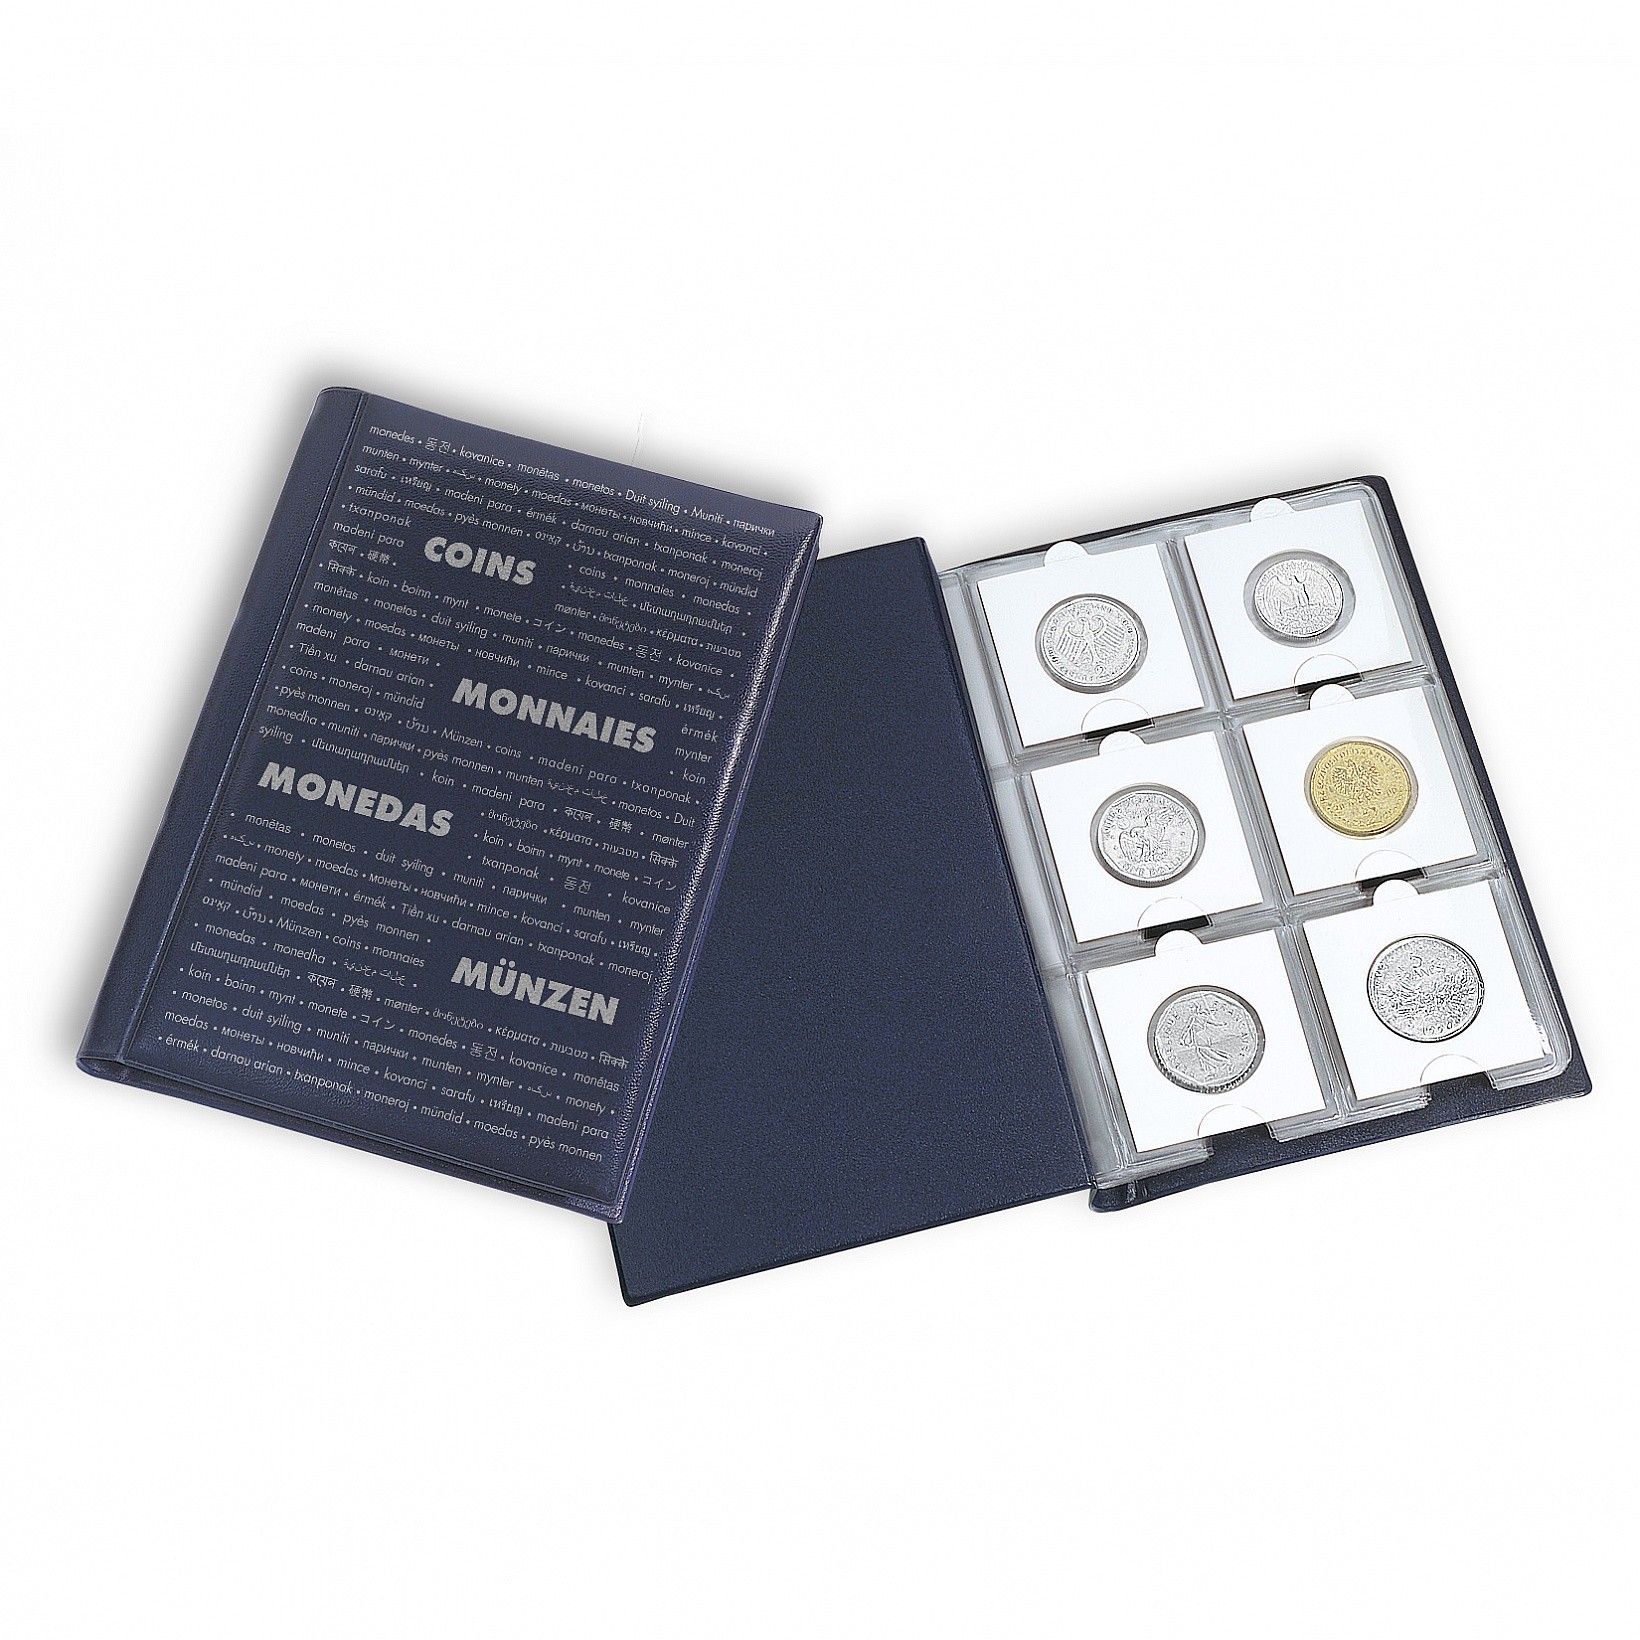 YESM album de collection de pièces de monnaie 250 pochettes 10